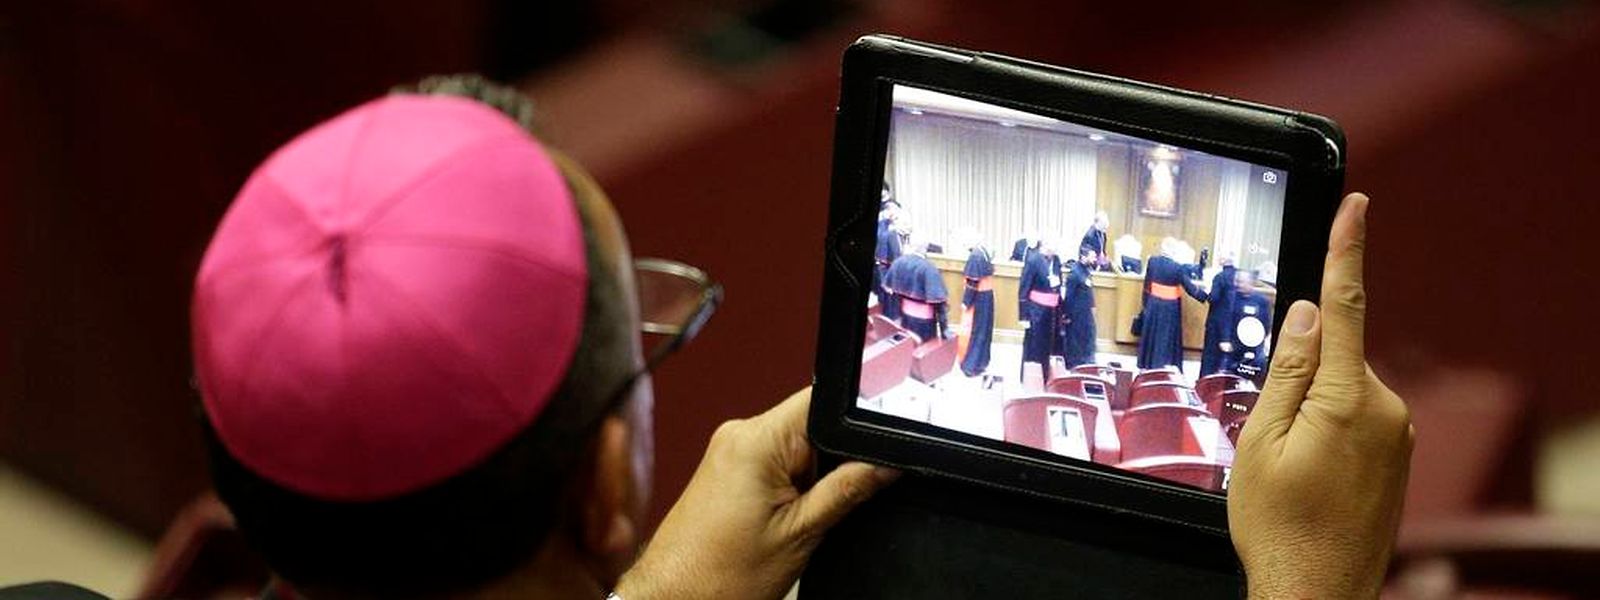 Entspannte Atmosphäre, trotz schwerwiegender Themen: Ein Bischof macht ein Foto mit seinem iPad während der Sitzung der Bischofssynode.